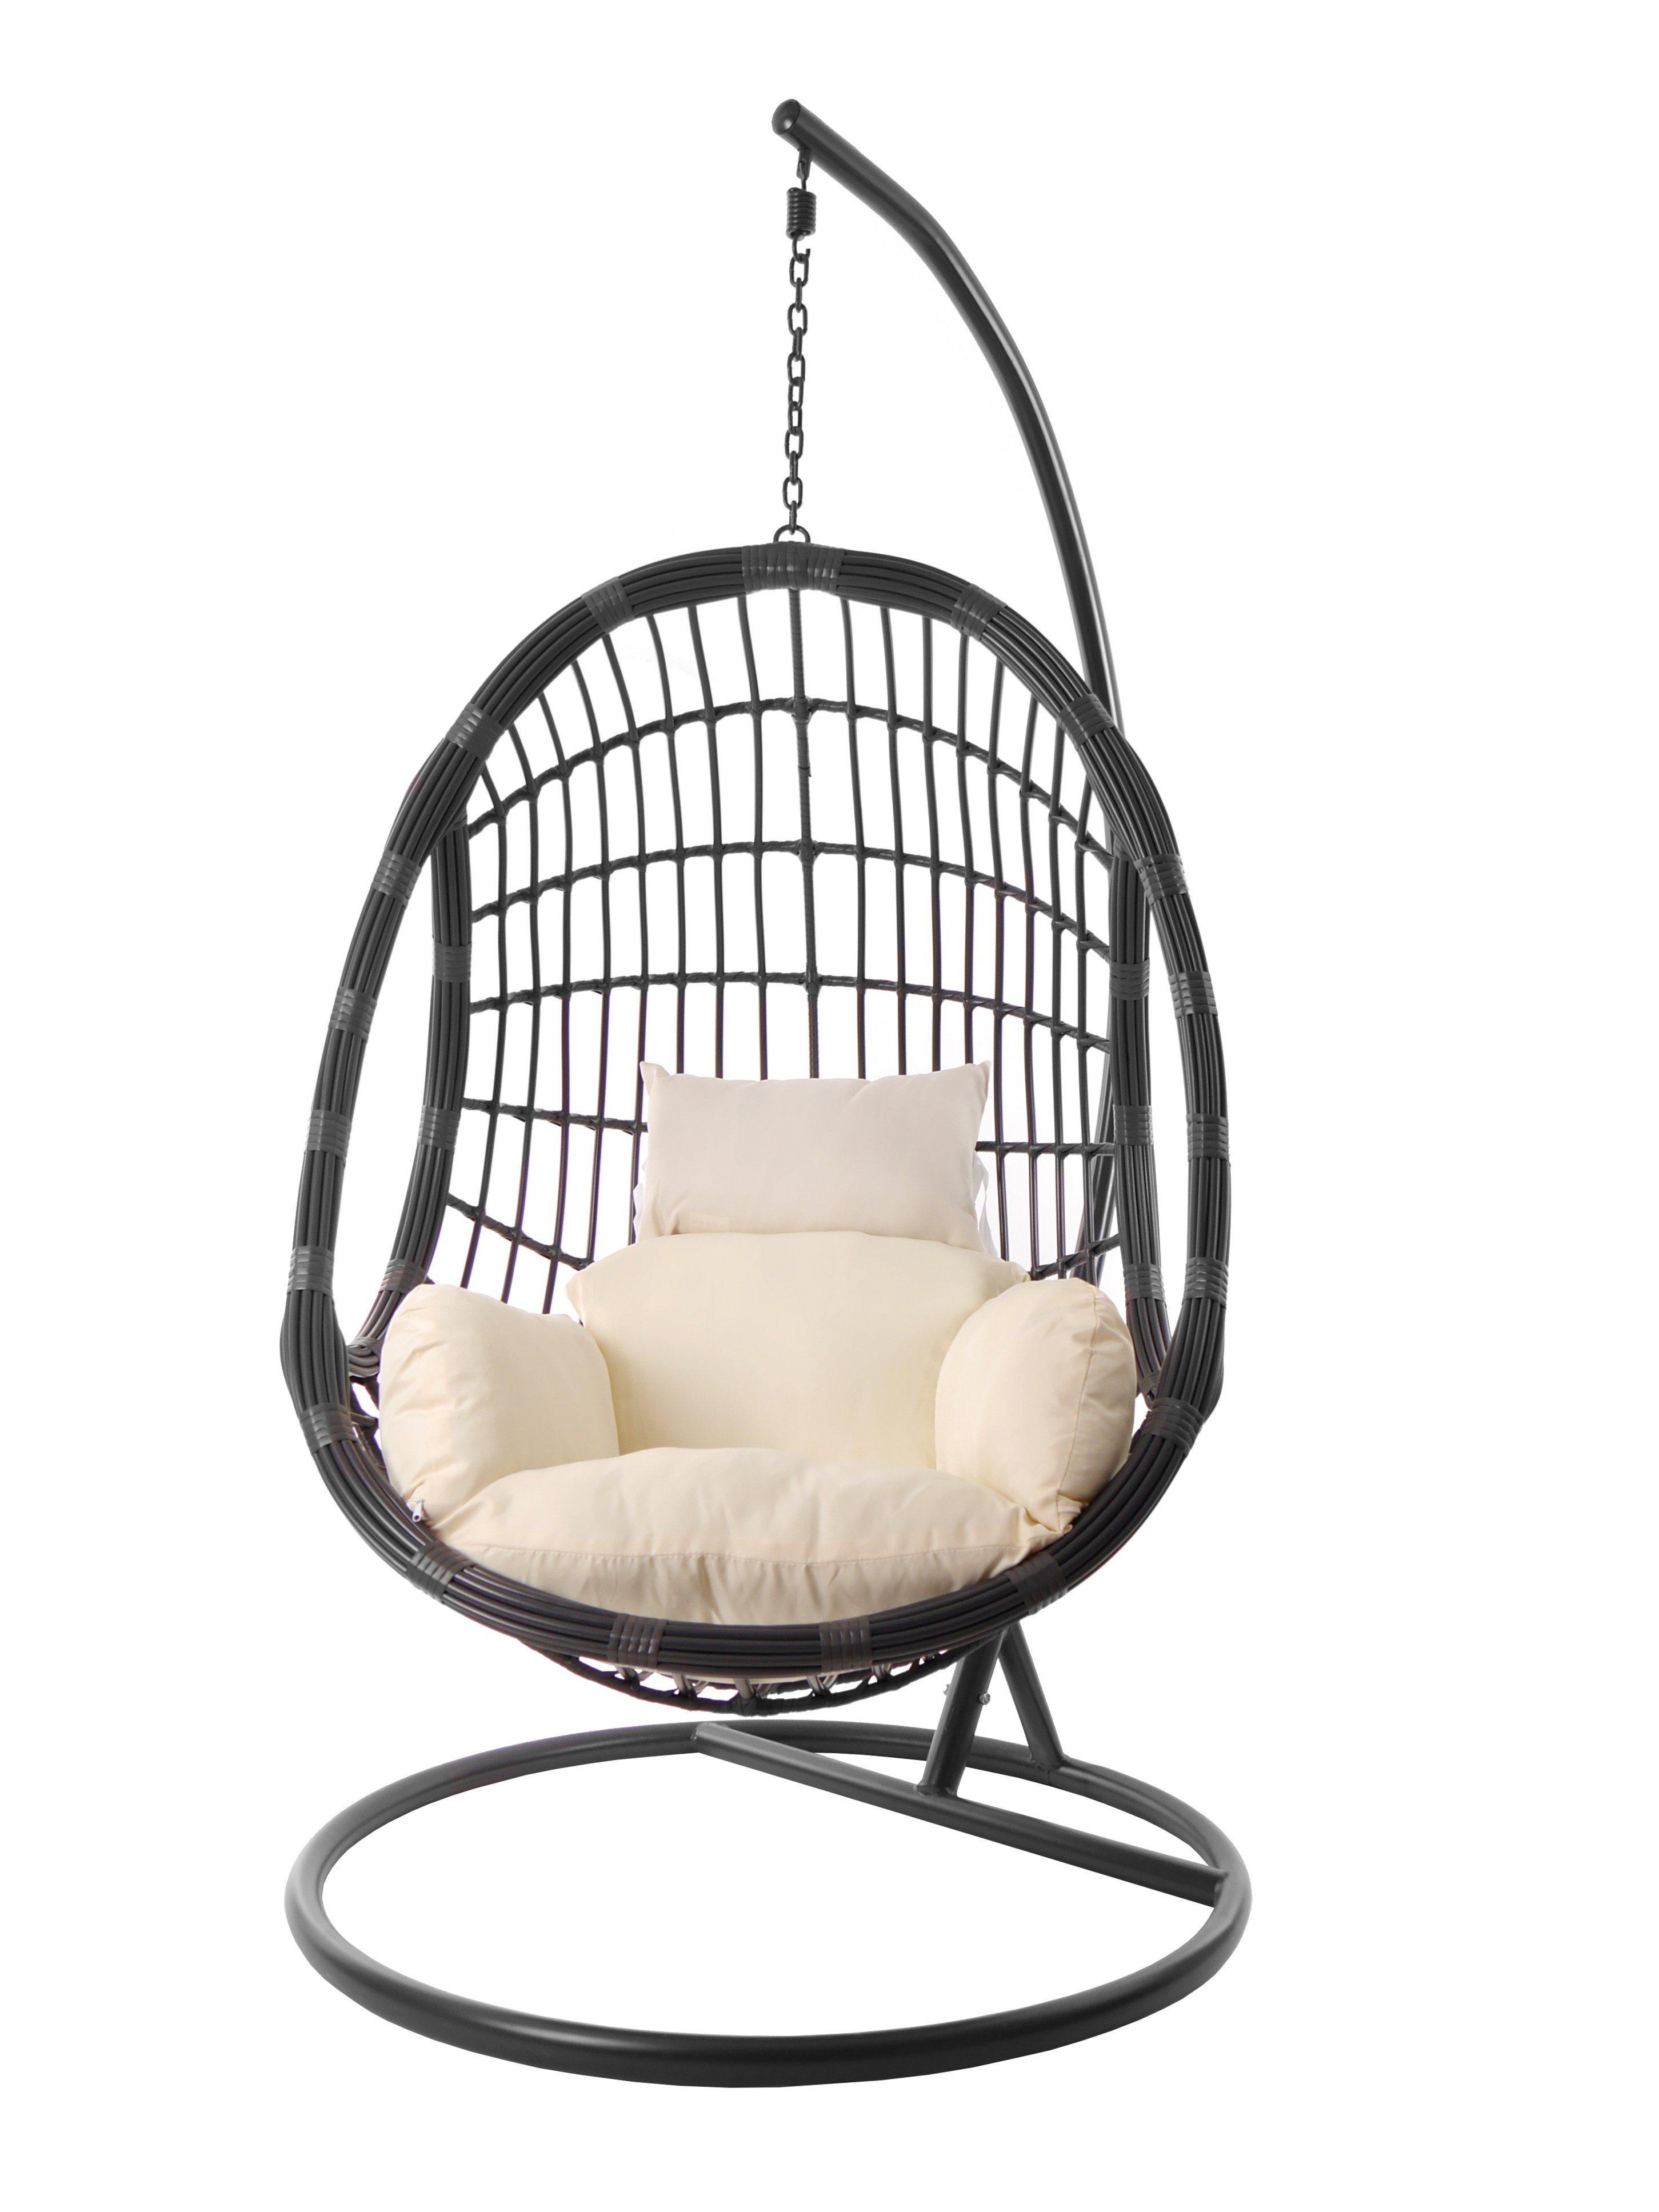 PALMANOVA (0050 farbige grau, in Hängesessel Nest-Kissen ivory) KIDEO Gestell elfenbein Hängestuhl Kissen, moderne grau, Hängesessel und mit Loungemöbel